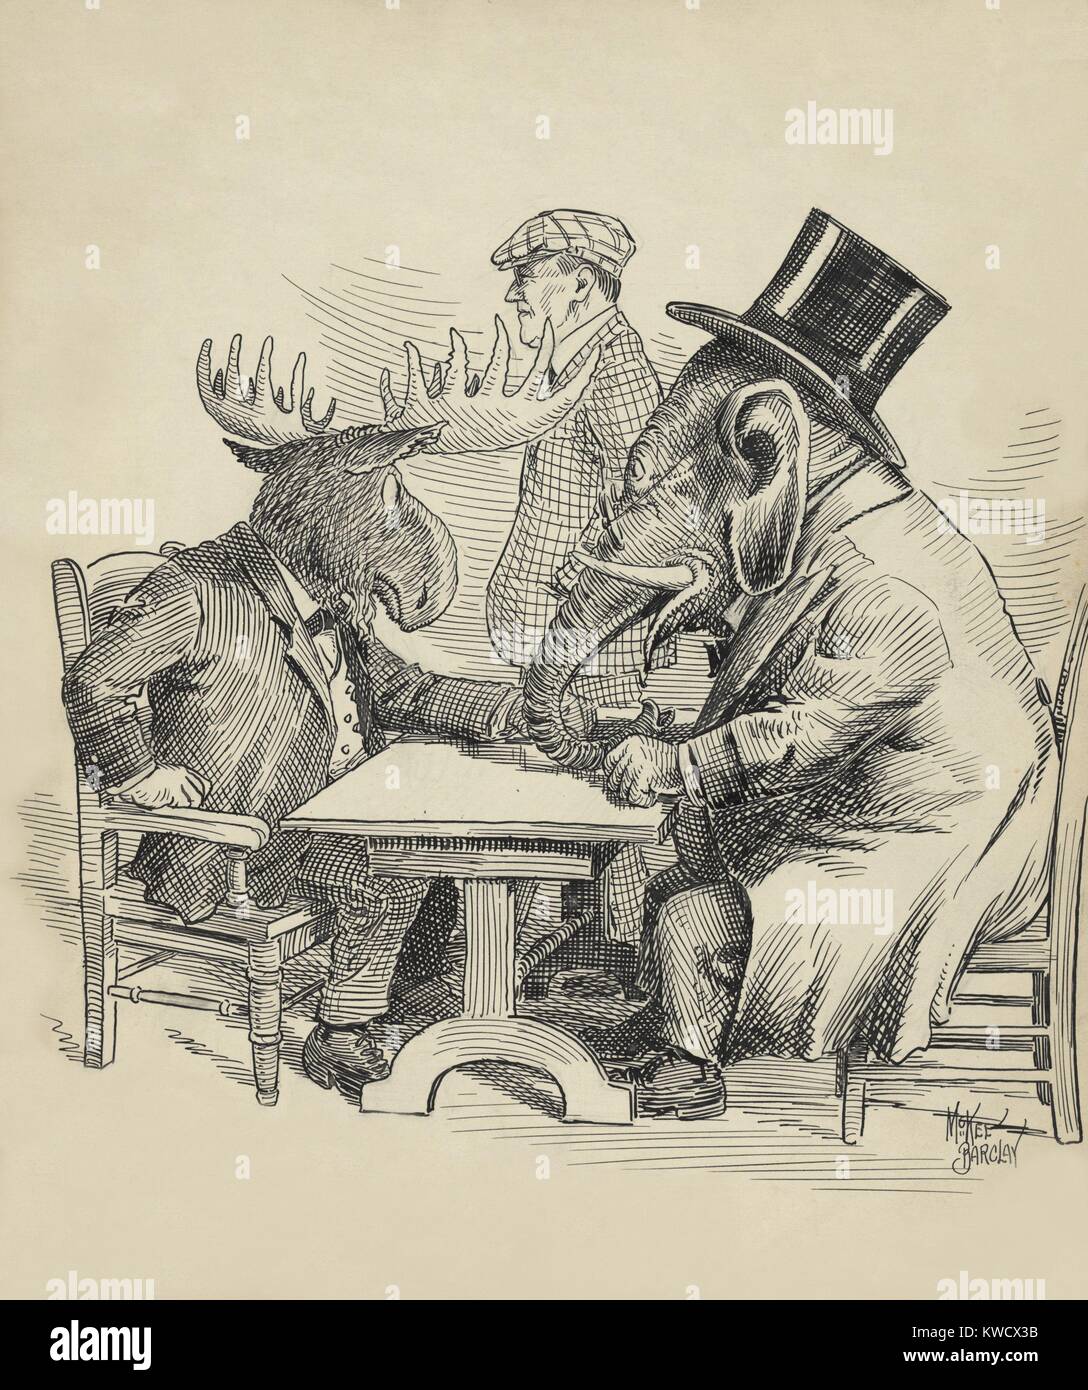 Caricature politique à propos de l'élection présidentielle de 1912 par Barclay McKee. Les conférences de l'éléphant républicain avec Theodore Roosevelts Bull Moose rebelle, comme promenades démocrate Woodrow Wilson par BSLOC  2017 (2 130) Banque D'Images